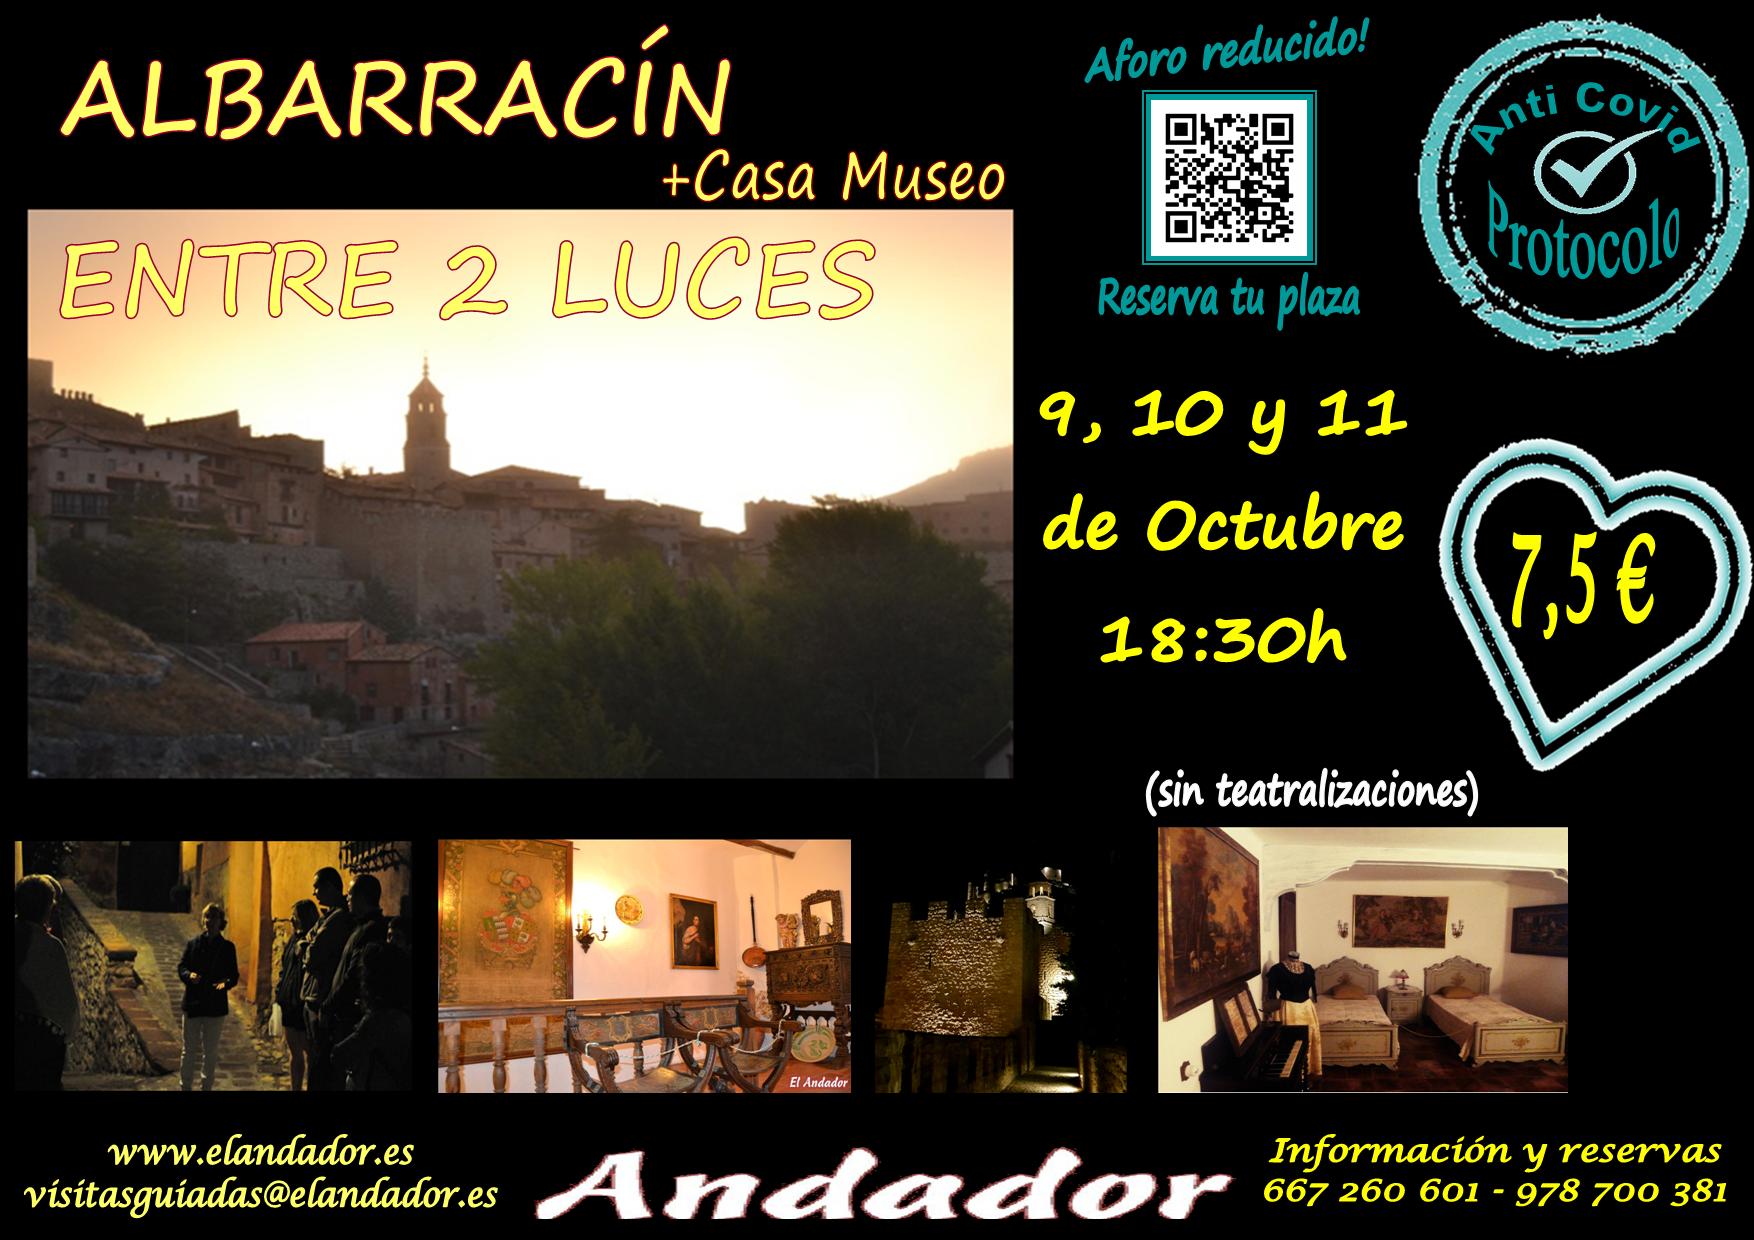 Del 9 al 11 de Octubre…Albarracín Entre 2 Luces! Aforos más reducidos!